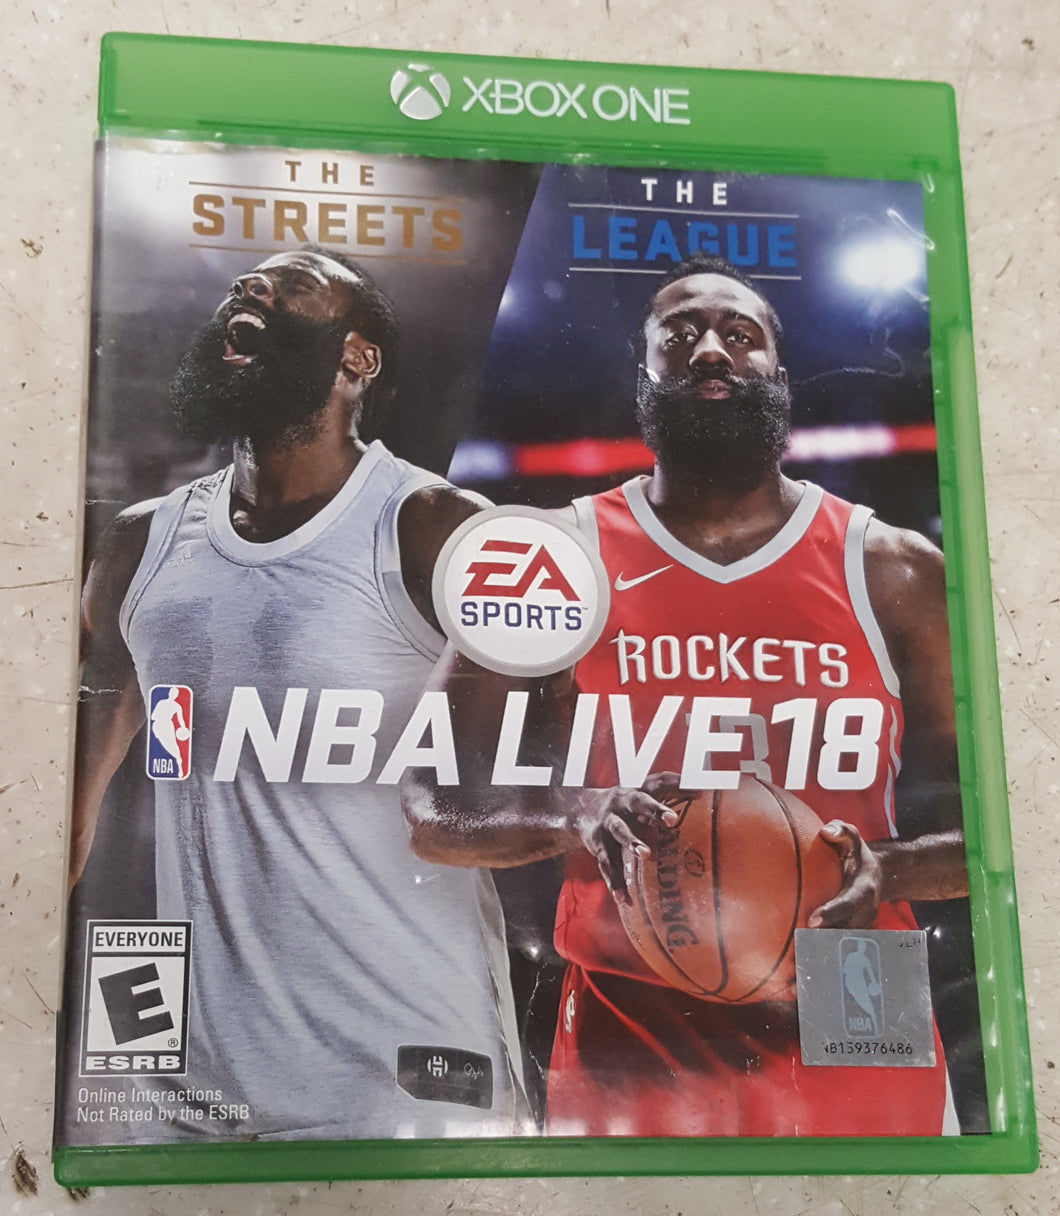 NBA Live 18 Xbox One Game